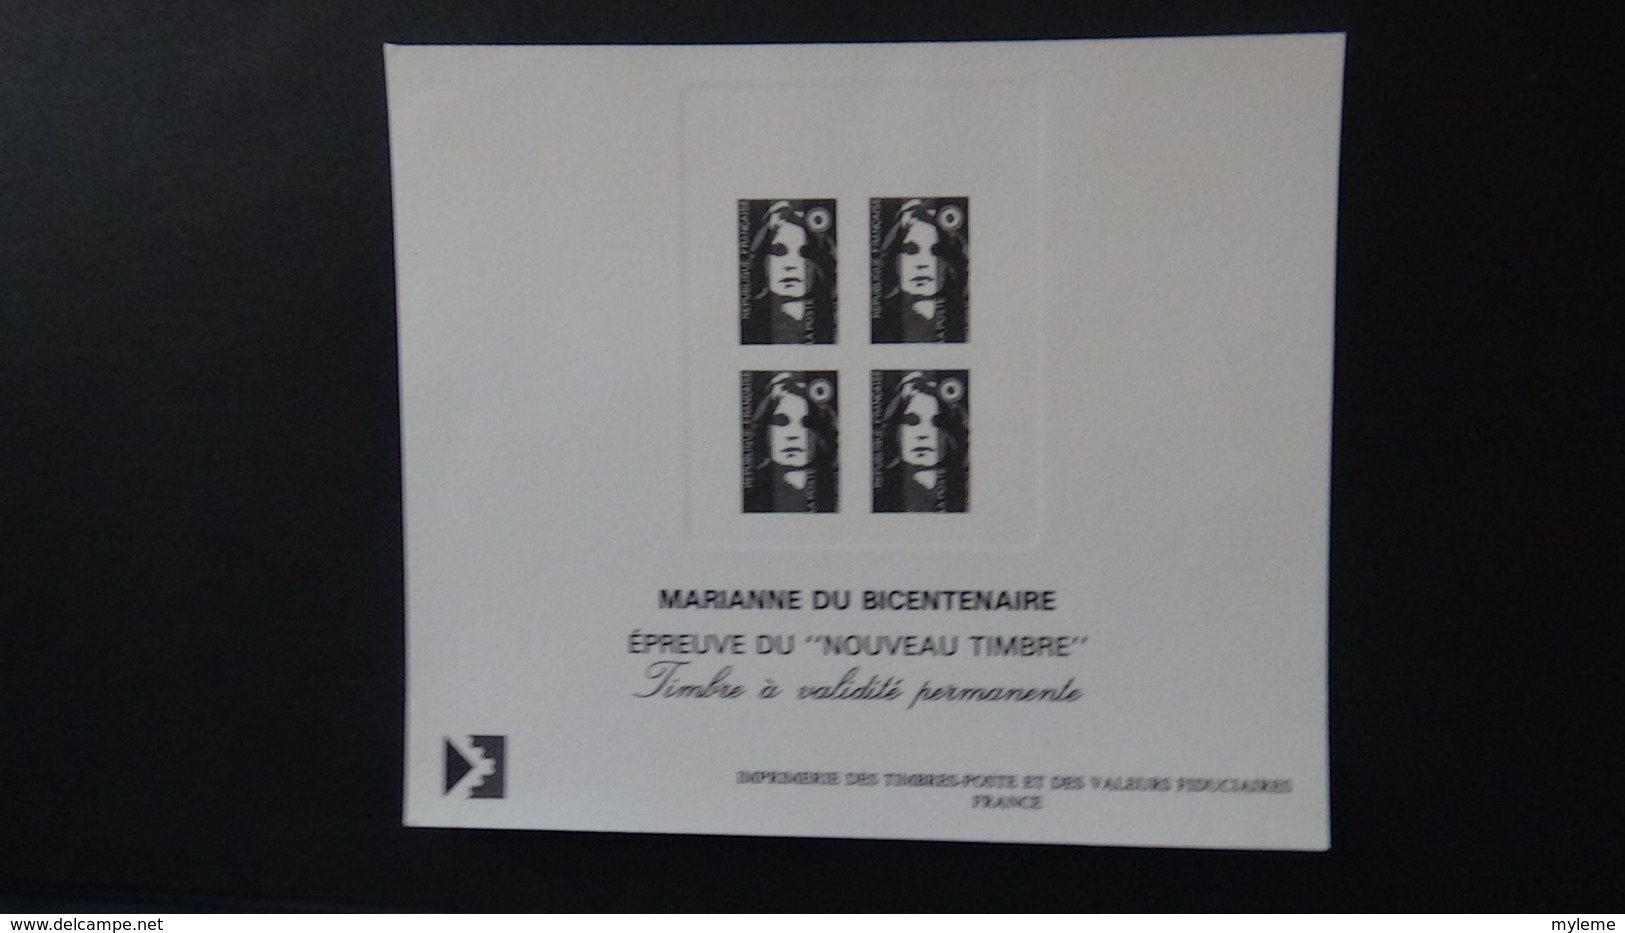 87 Gravures des timbres postes Français dans son classeur d'origine. A saisir  !!!